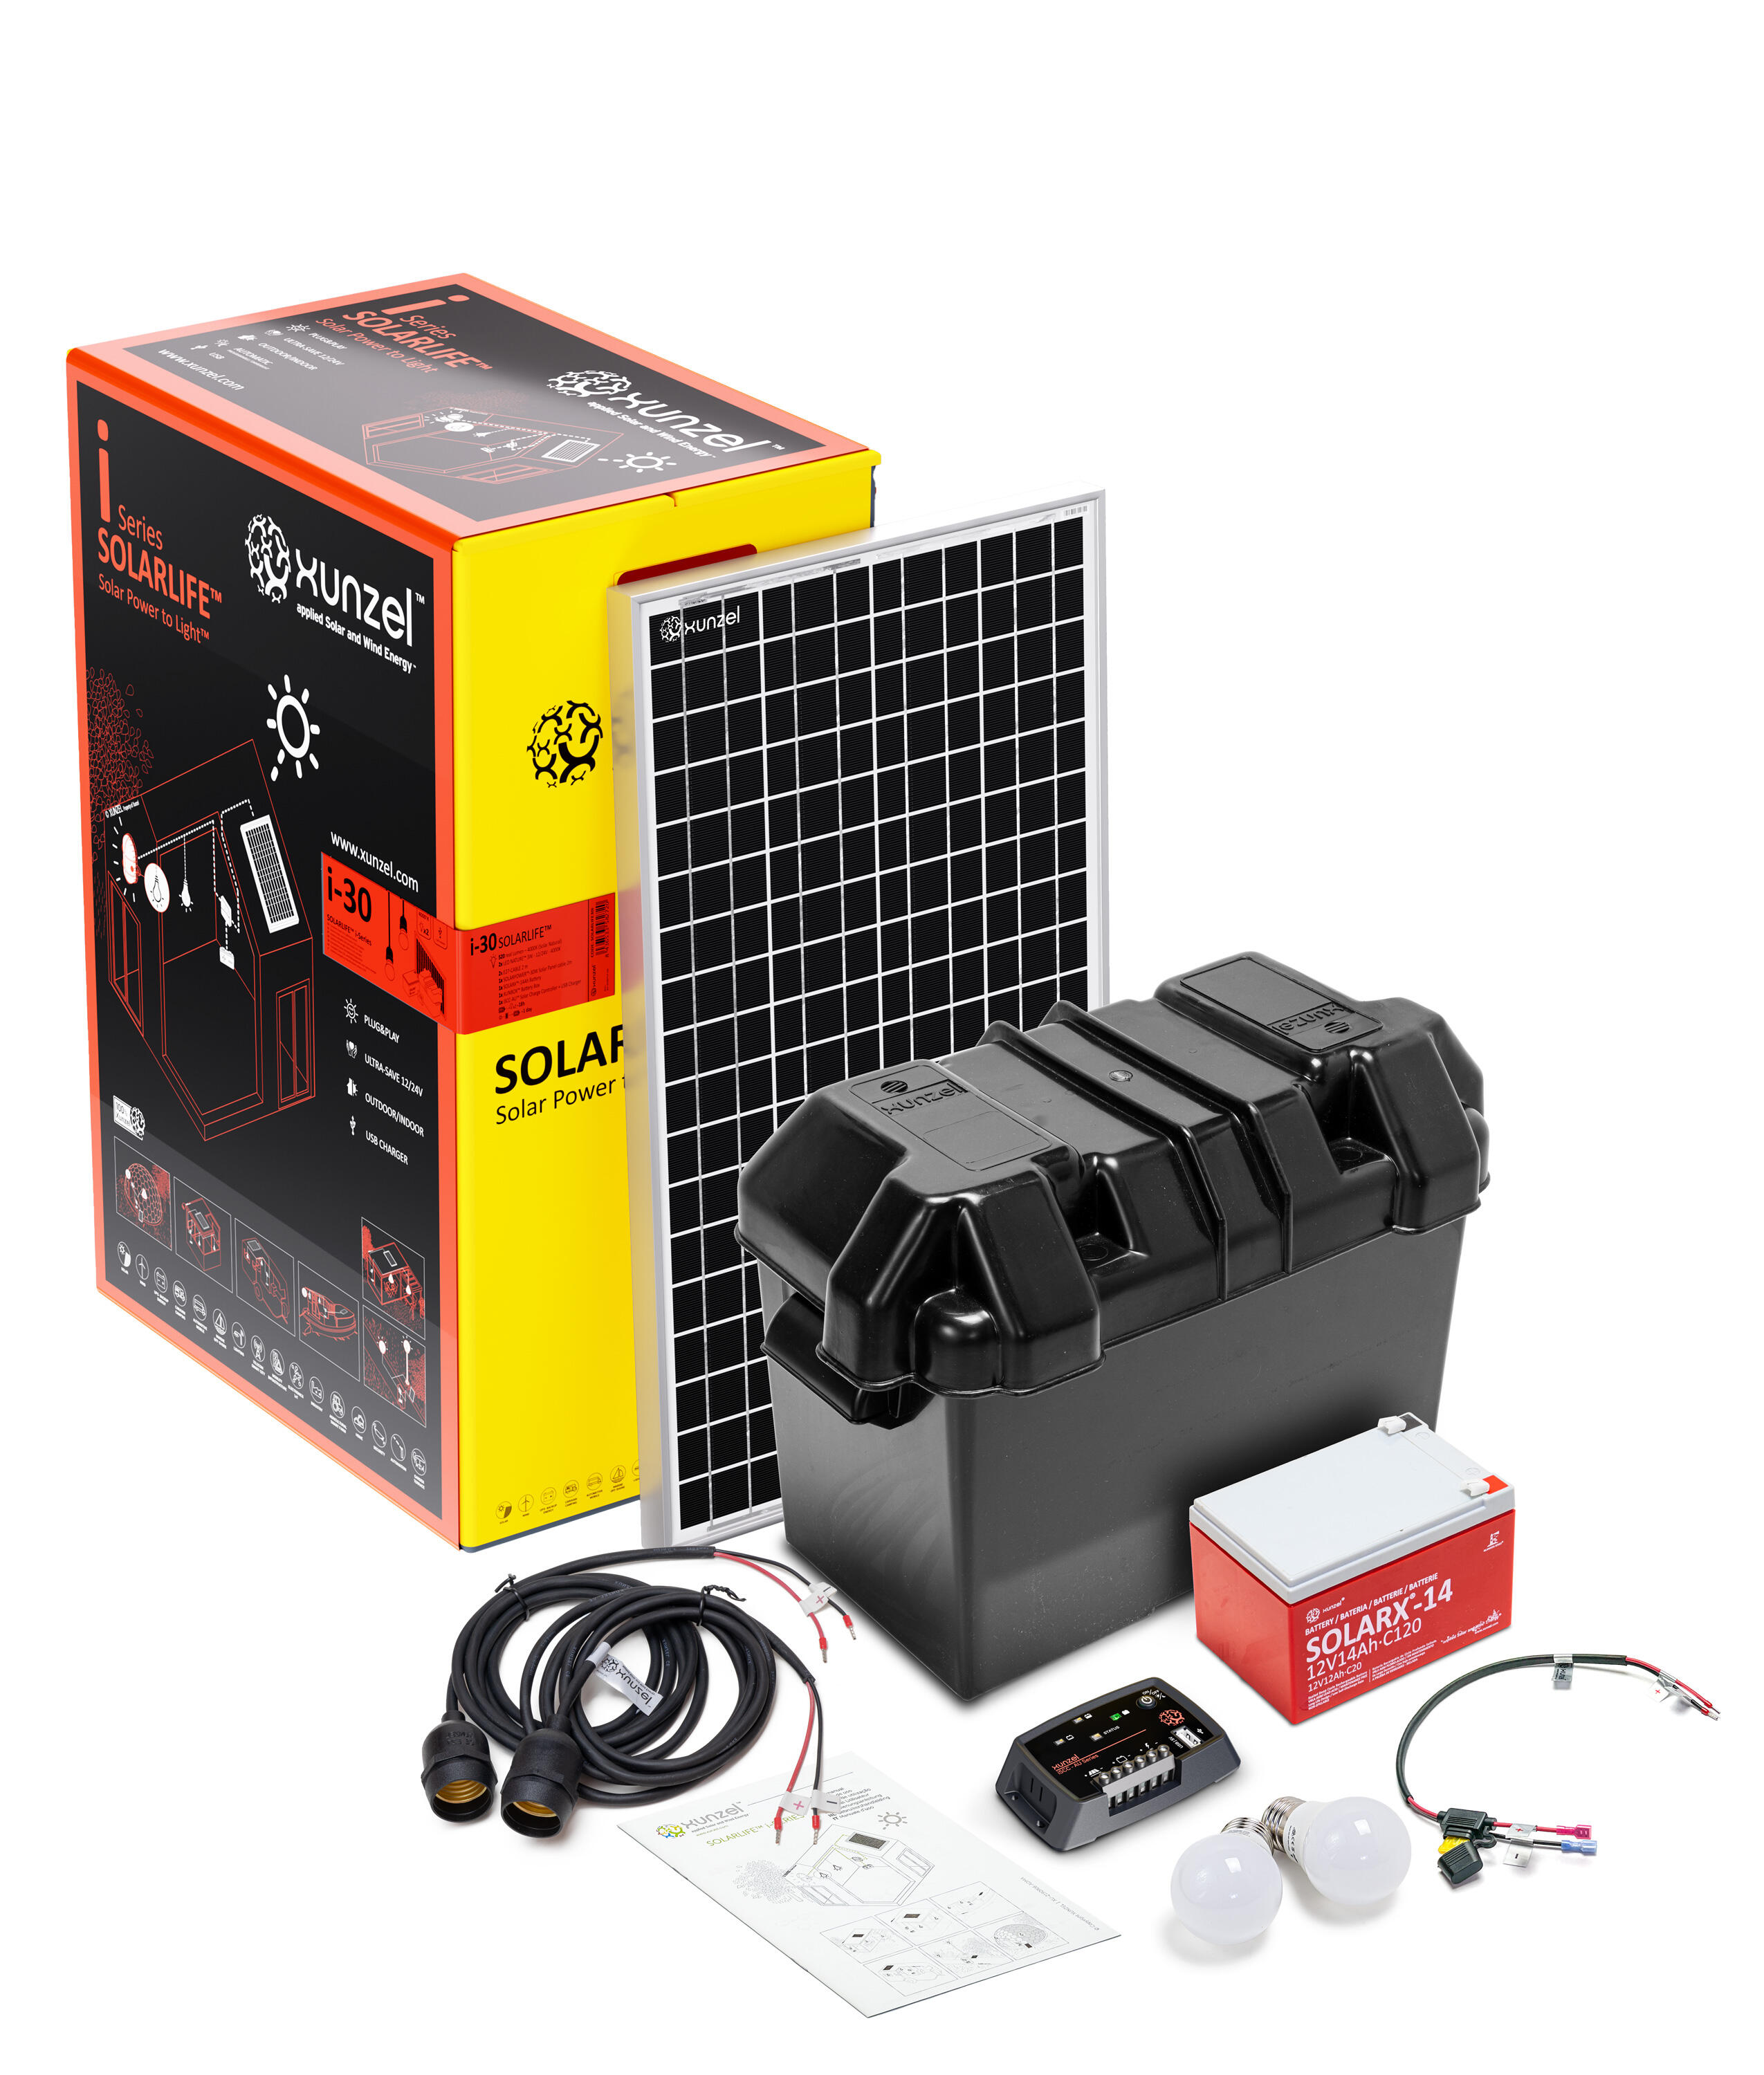 Kit solar de iluminación led de alta eficiencia solarlife-xunzel-30i